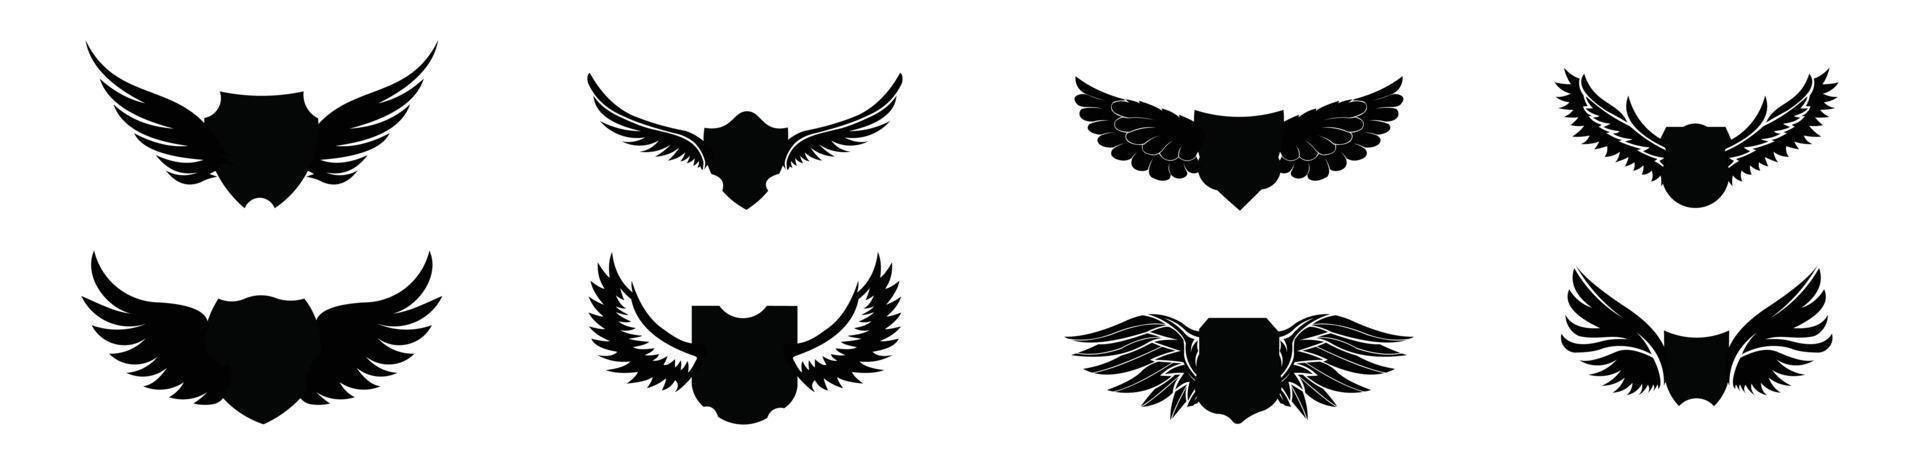 conjunto de escudos en blanco con alas, conjunto de escudos alados heráldicos en diferentes formas con pájaro vector